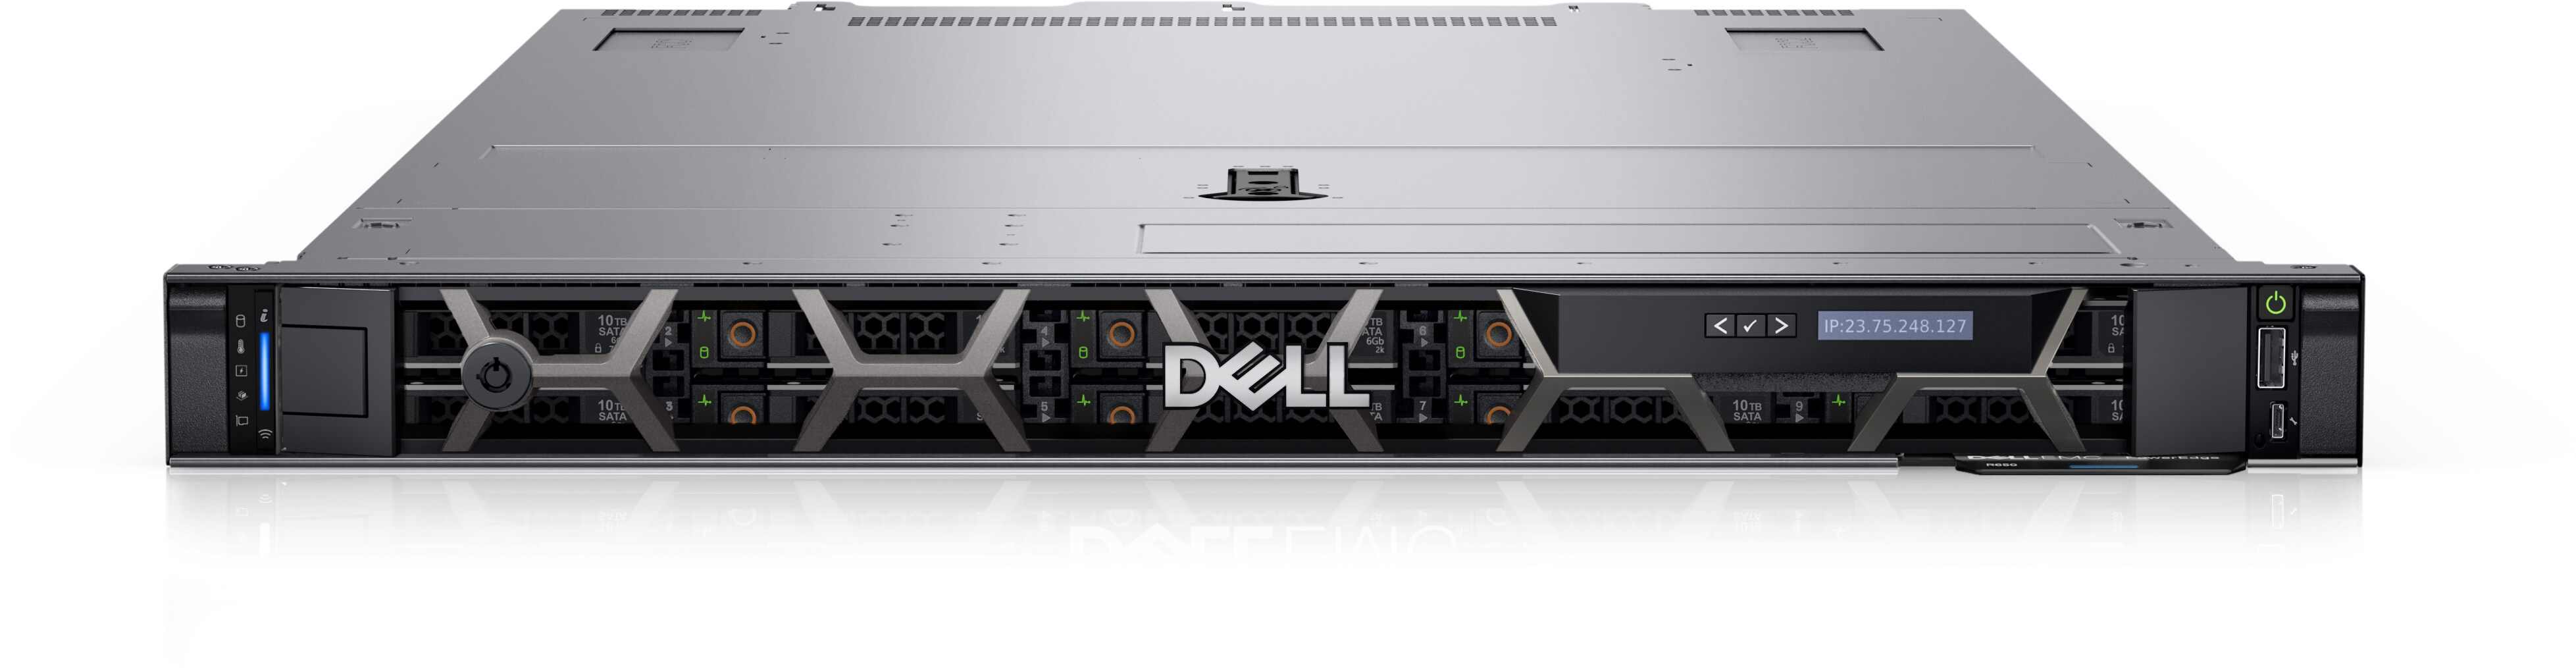 Dell PowerEdge R610 デルのサーバー